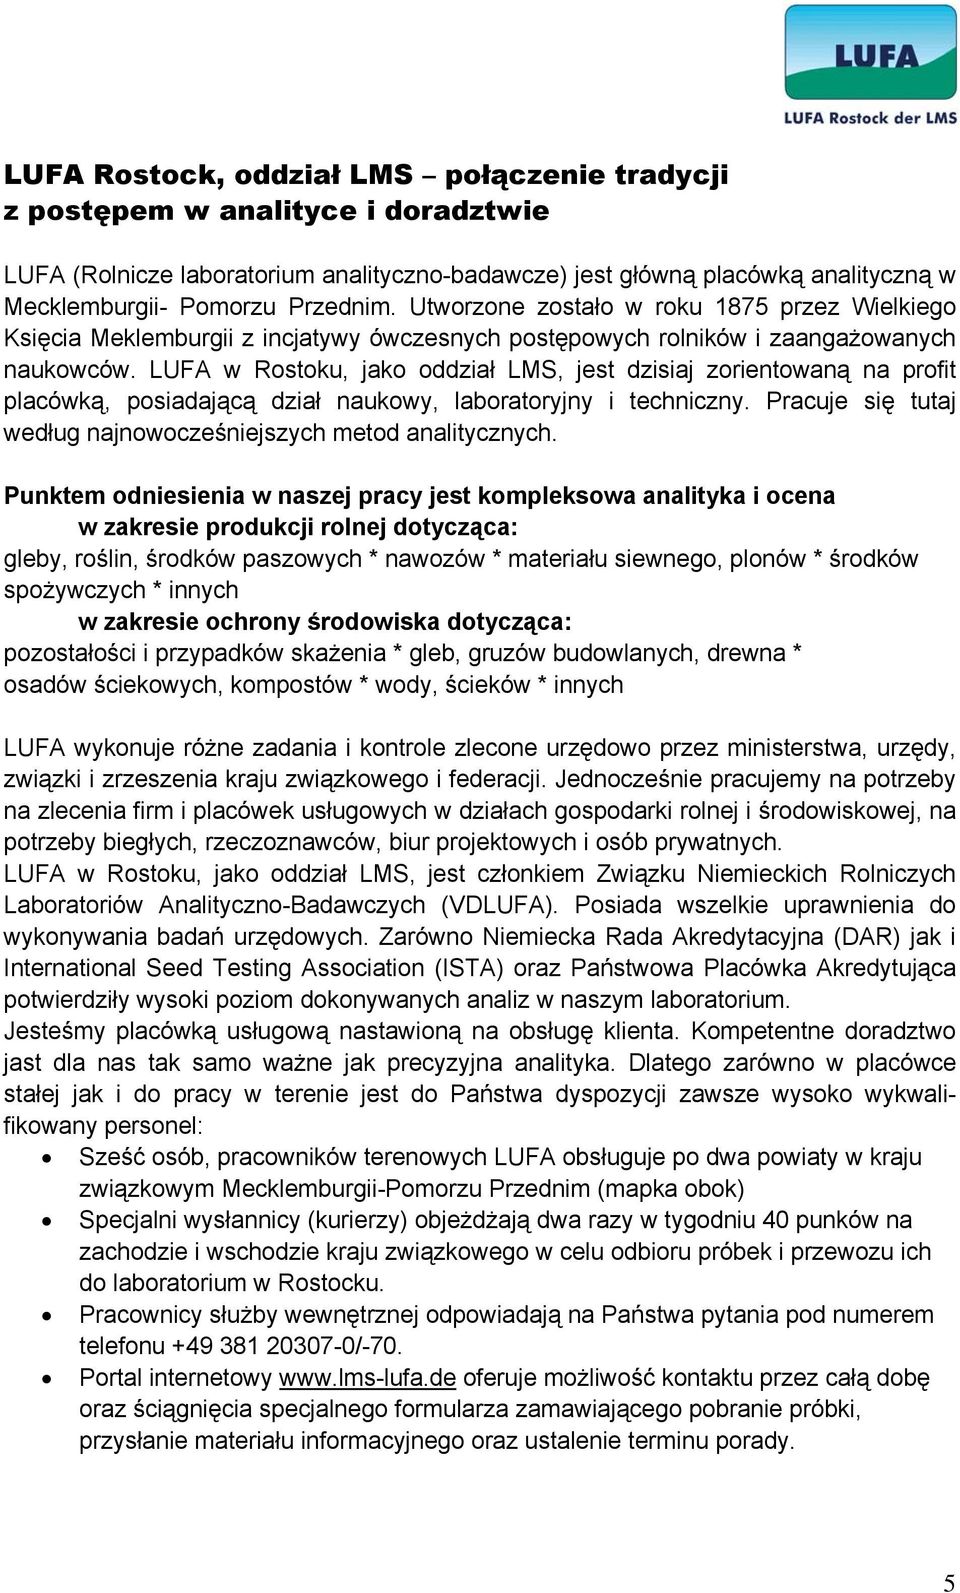 LUFA w Rostoku, jako oddział LMS, jest dzisiaj zorientowaną na profit placówką, posiadającą dział naukowy, laboratoryjny i techniczny.